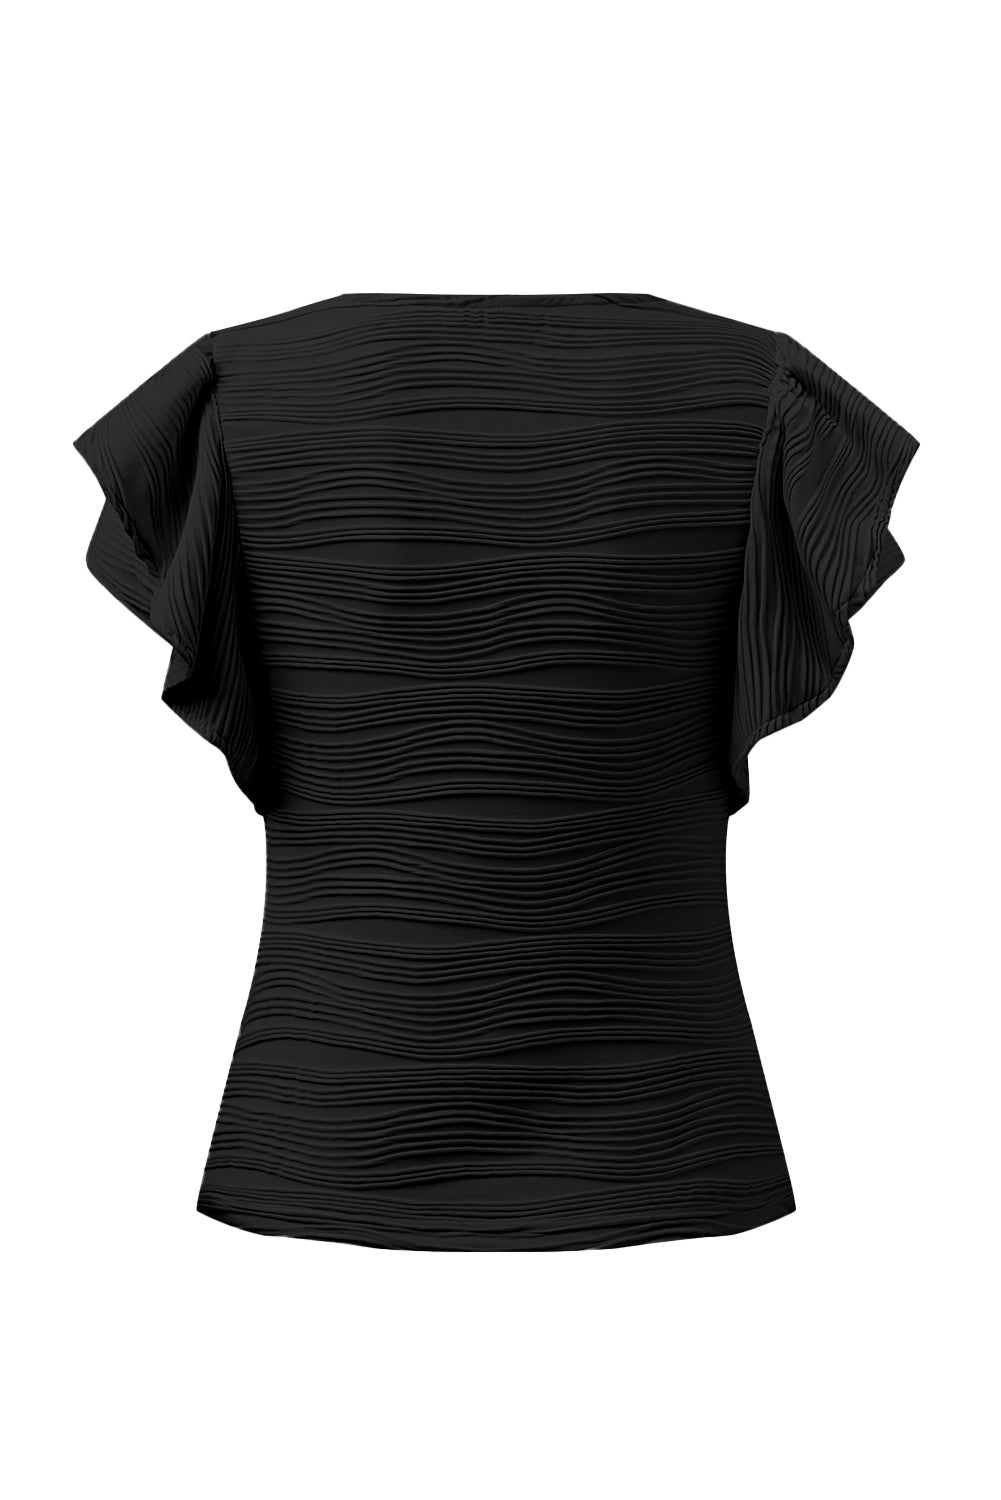 Crna majica s rukavima s valovitom teksturom